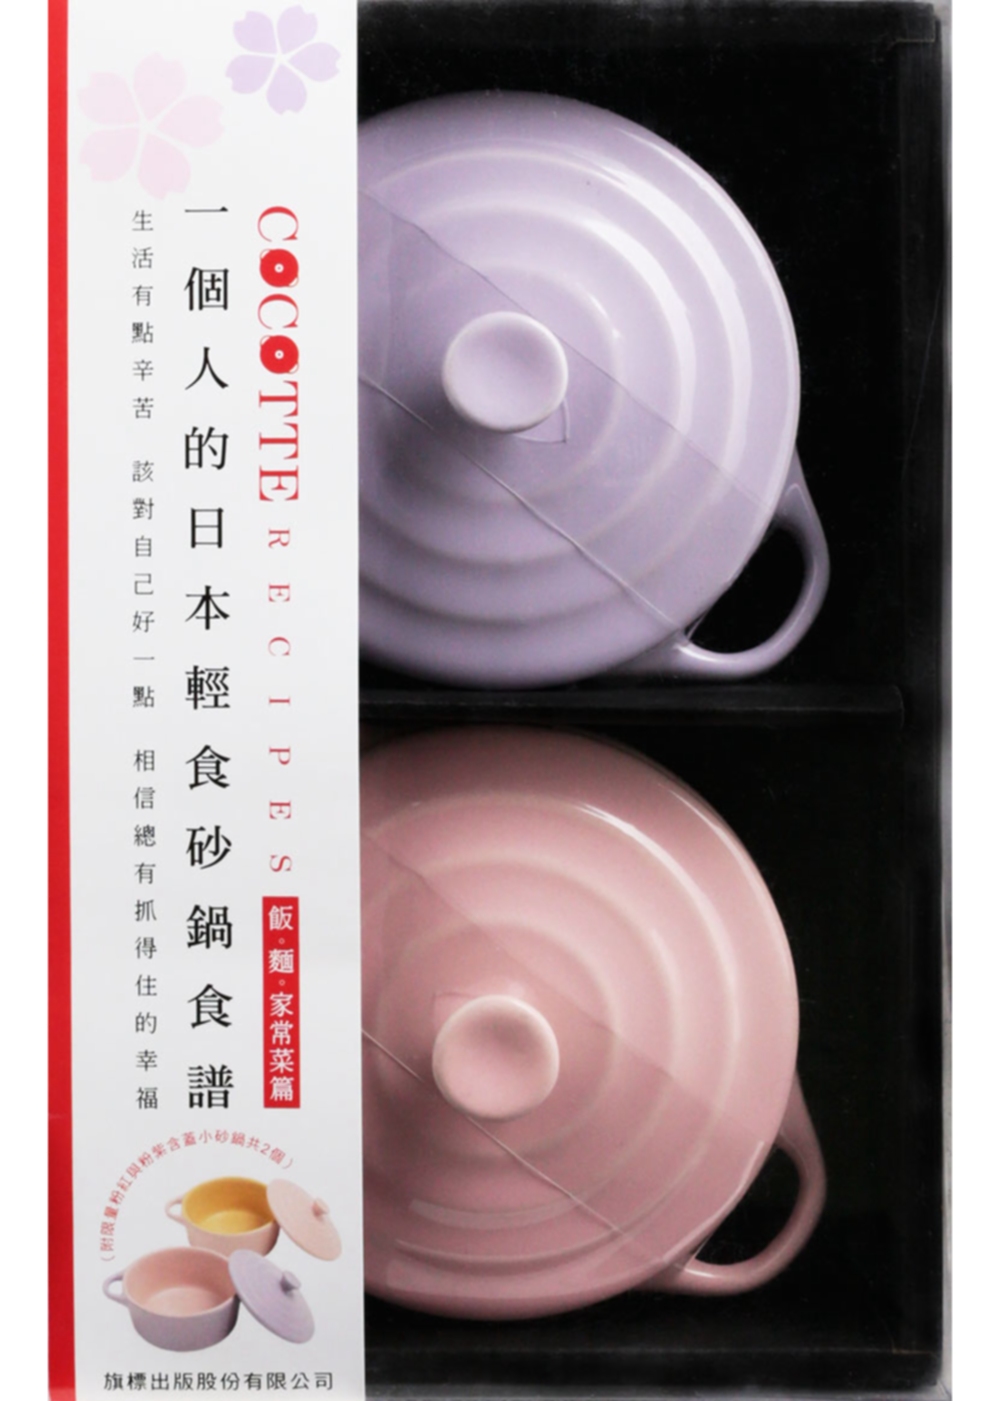 COCOTTE RECIPES 一個人的日本輕食砂鍋食譜：飯‧麵‧家常菜篇（附限量粉紅與粉紫含蓋小砂鍋共2個）